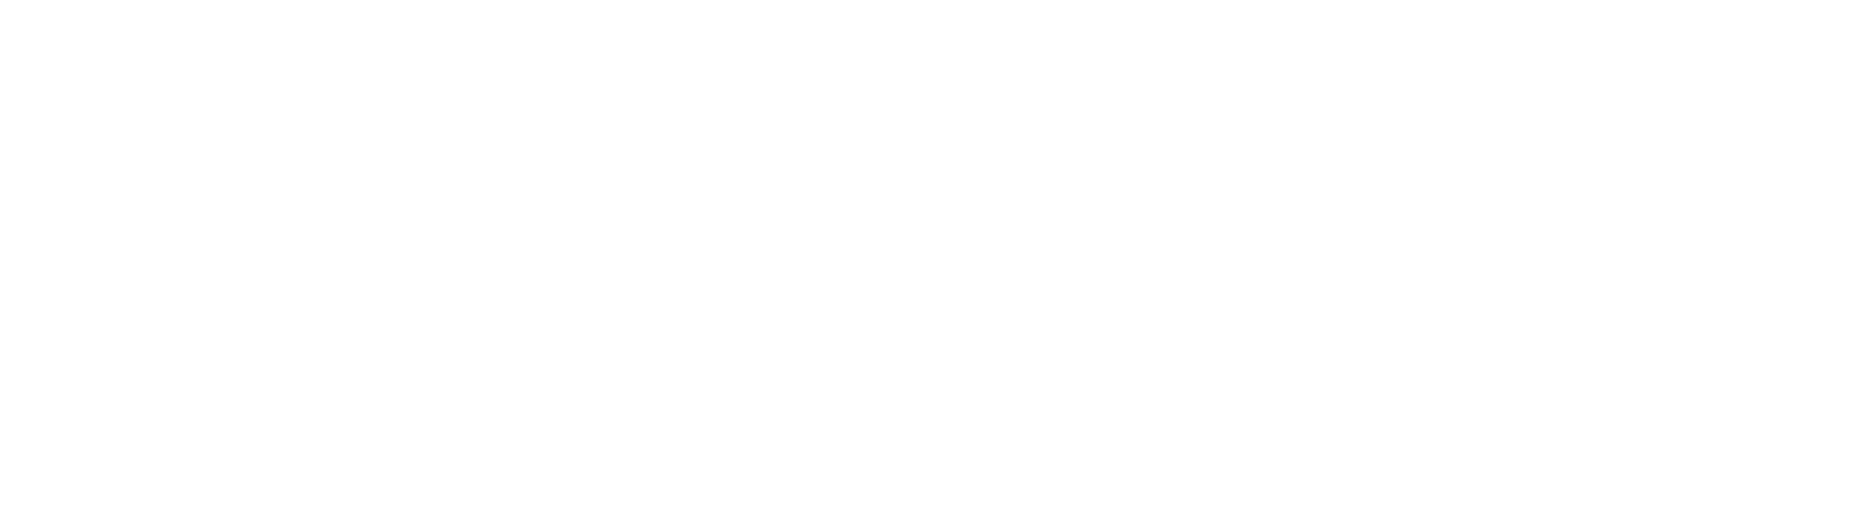 Avene-logo-white